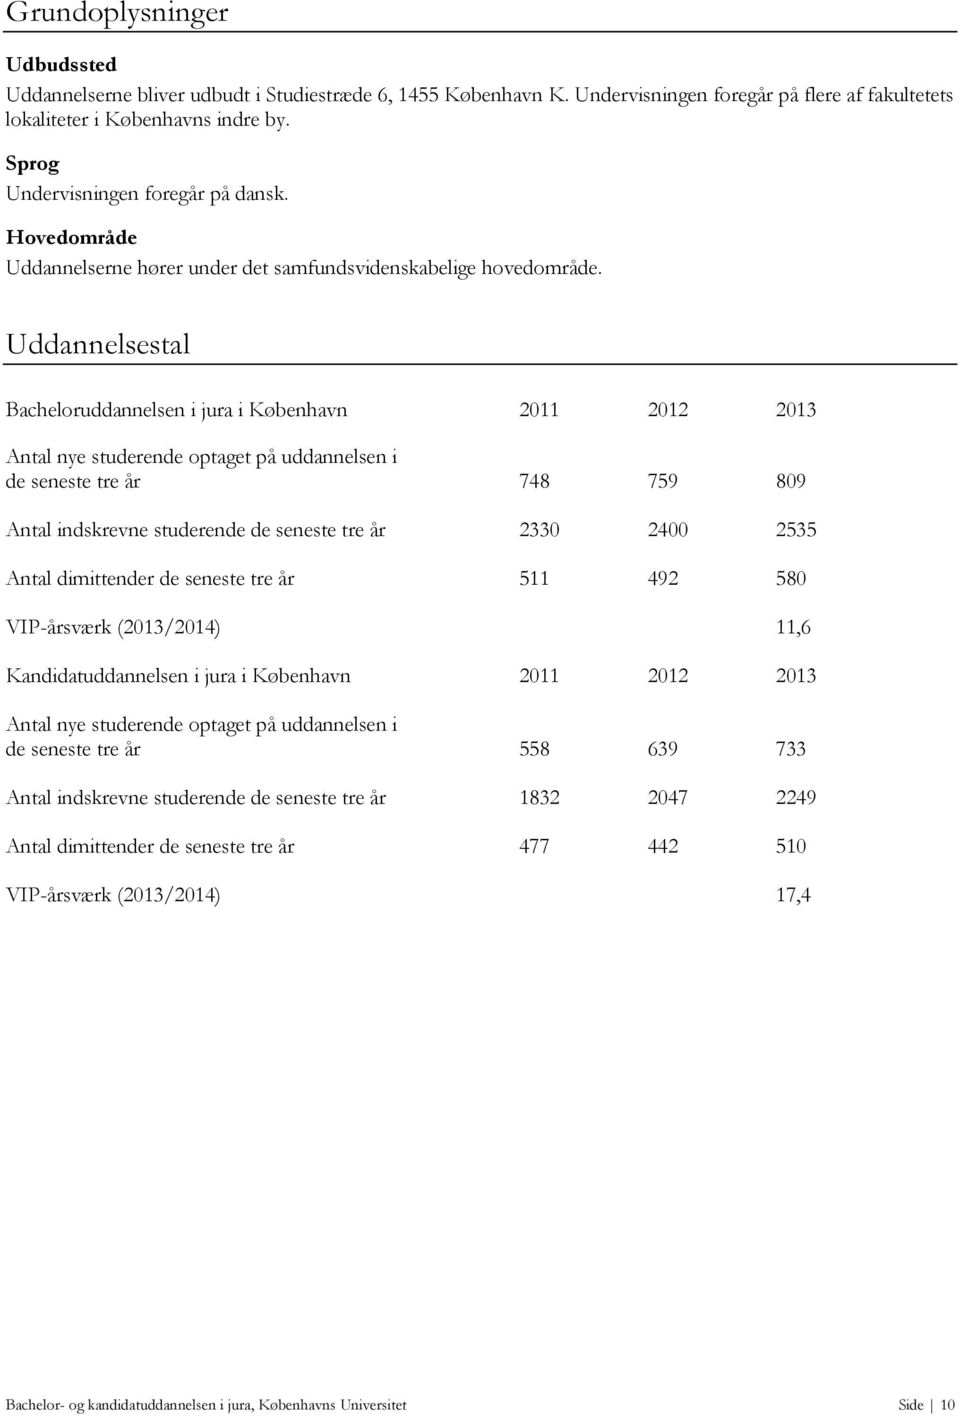 Uddannelsestal Bacheloruddannelsen i jura i København 2011 2012 2013 Antal nye studerende optaget på uddannelsen i de seneste tre år 748 759 809 Antal indskrevne studerende de seneste tre år 2330